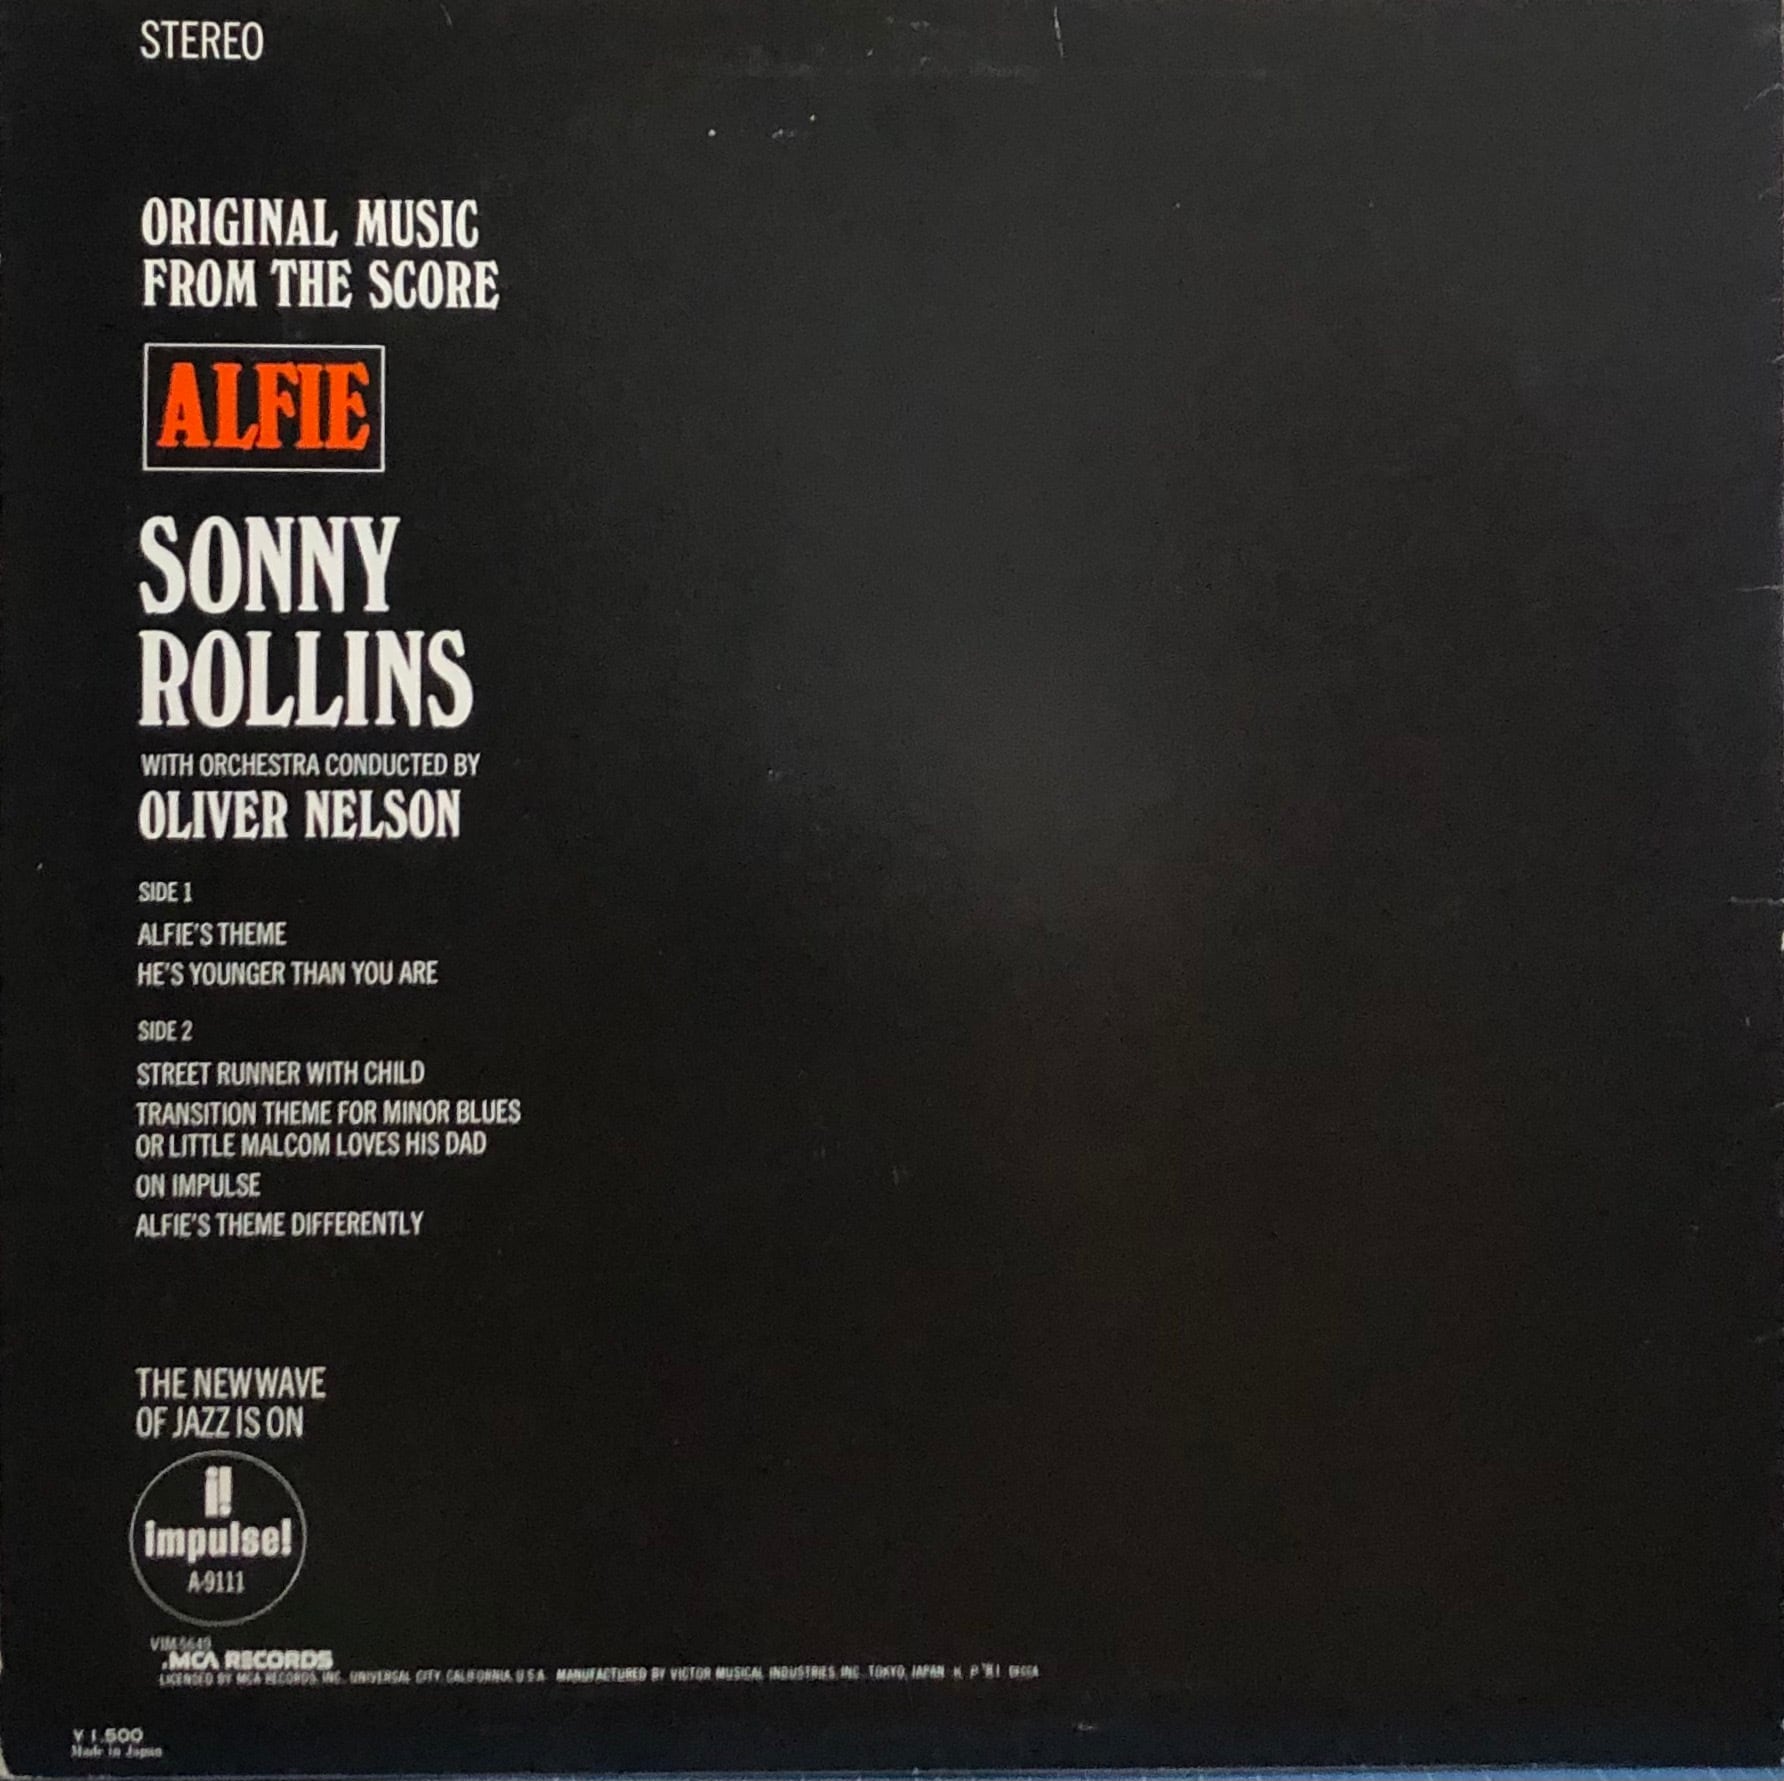 売れ筋 中古LP ORIGINAL MUSIC FROM THE SCORE ALFIE アルフィー ソニー ロリンズ オリバー ネルソン  オーケストラ